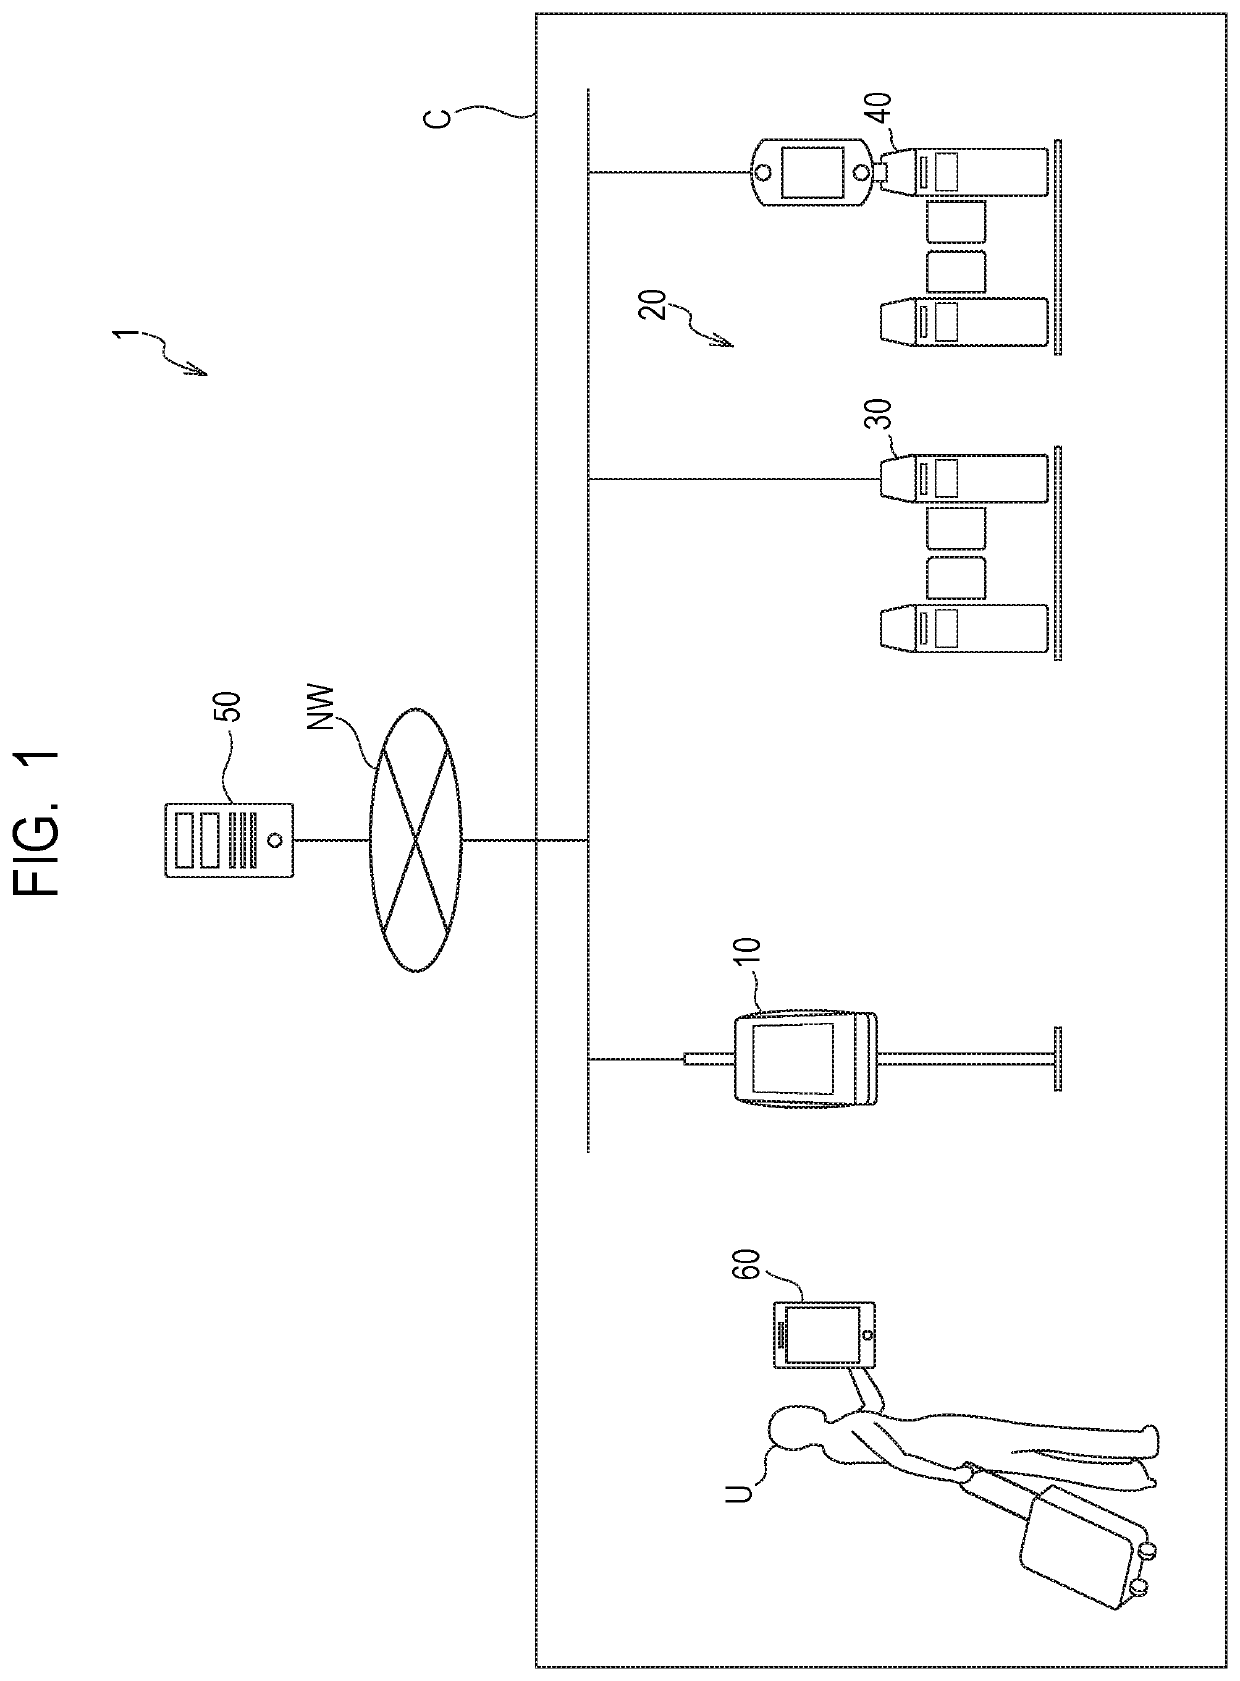 Gate apparatus, control method of gate apparatus, and storage medium